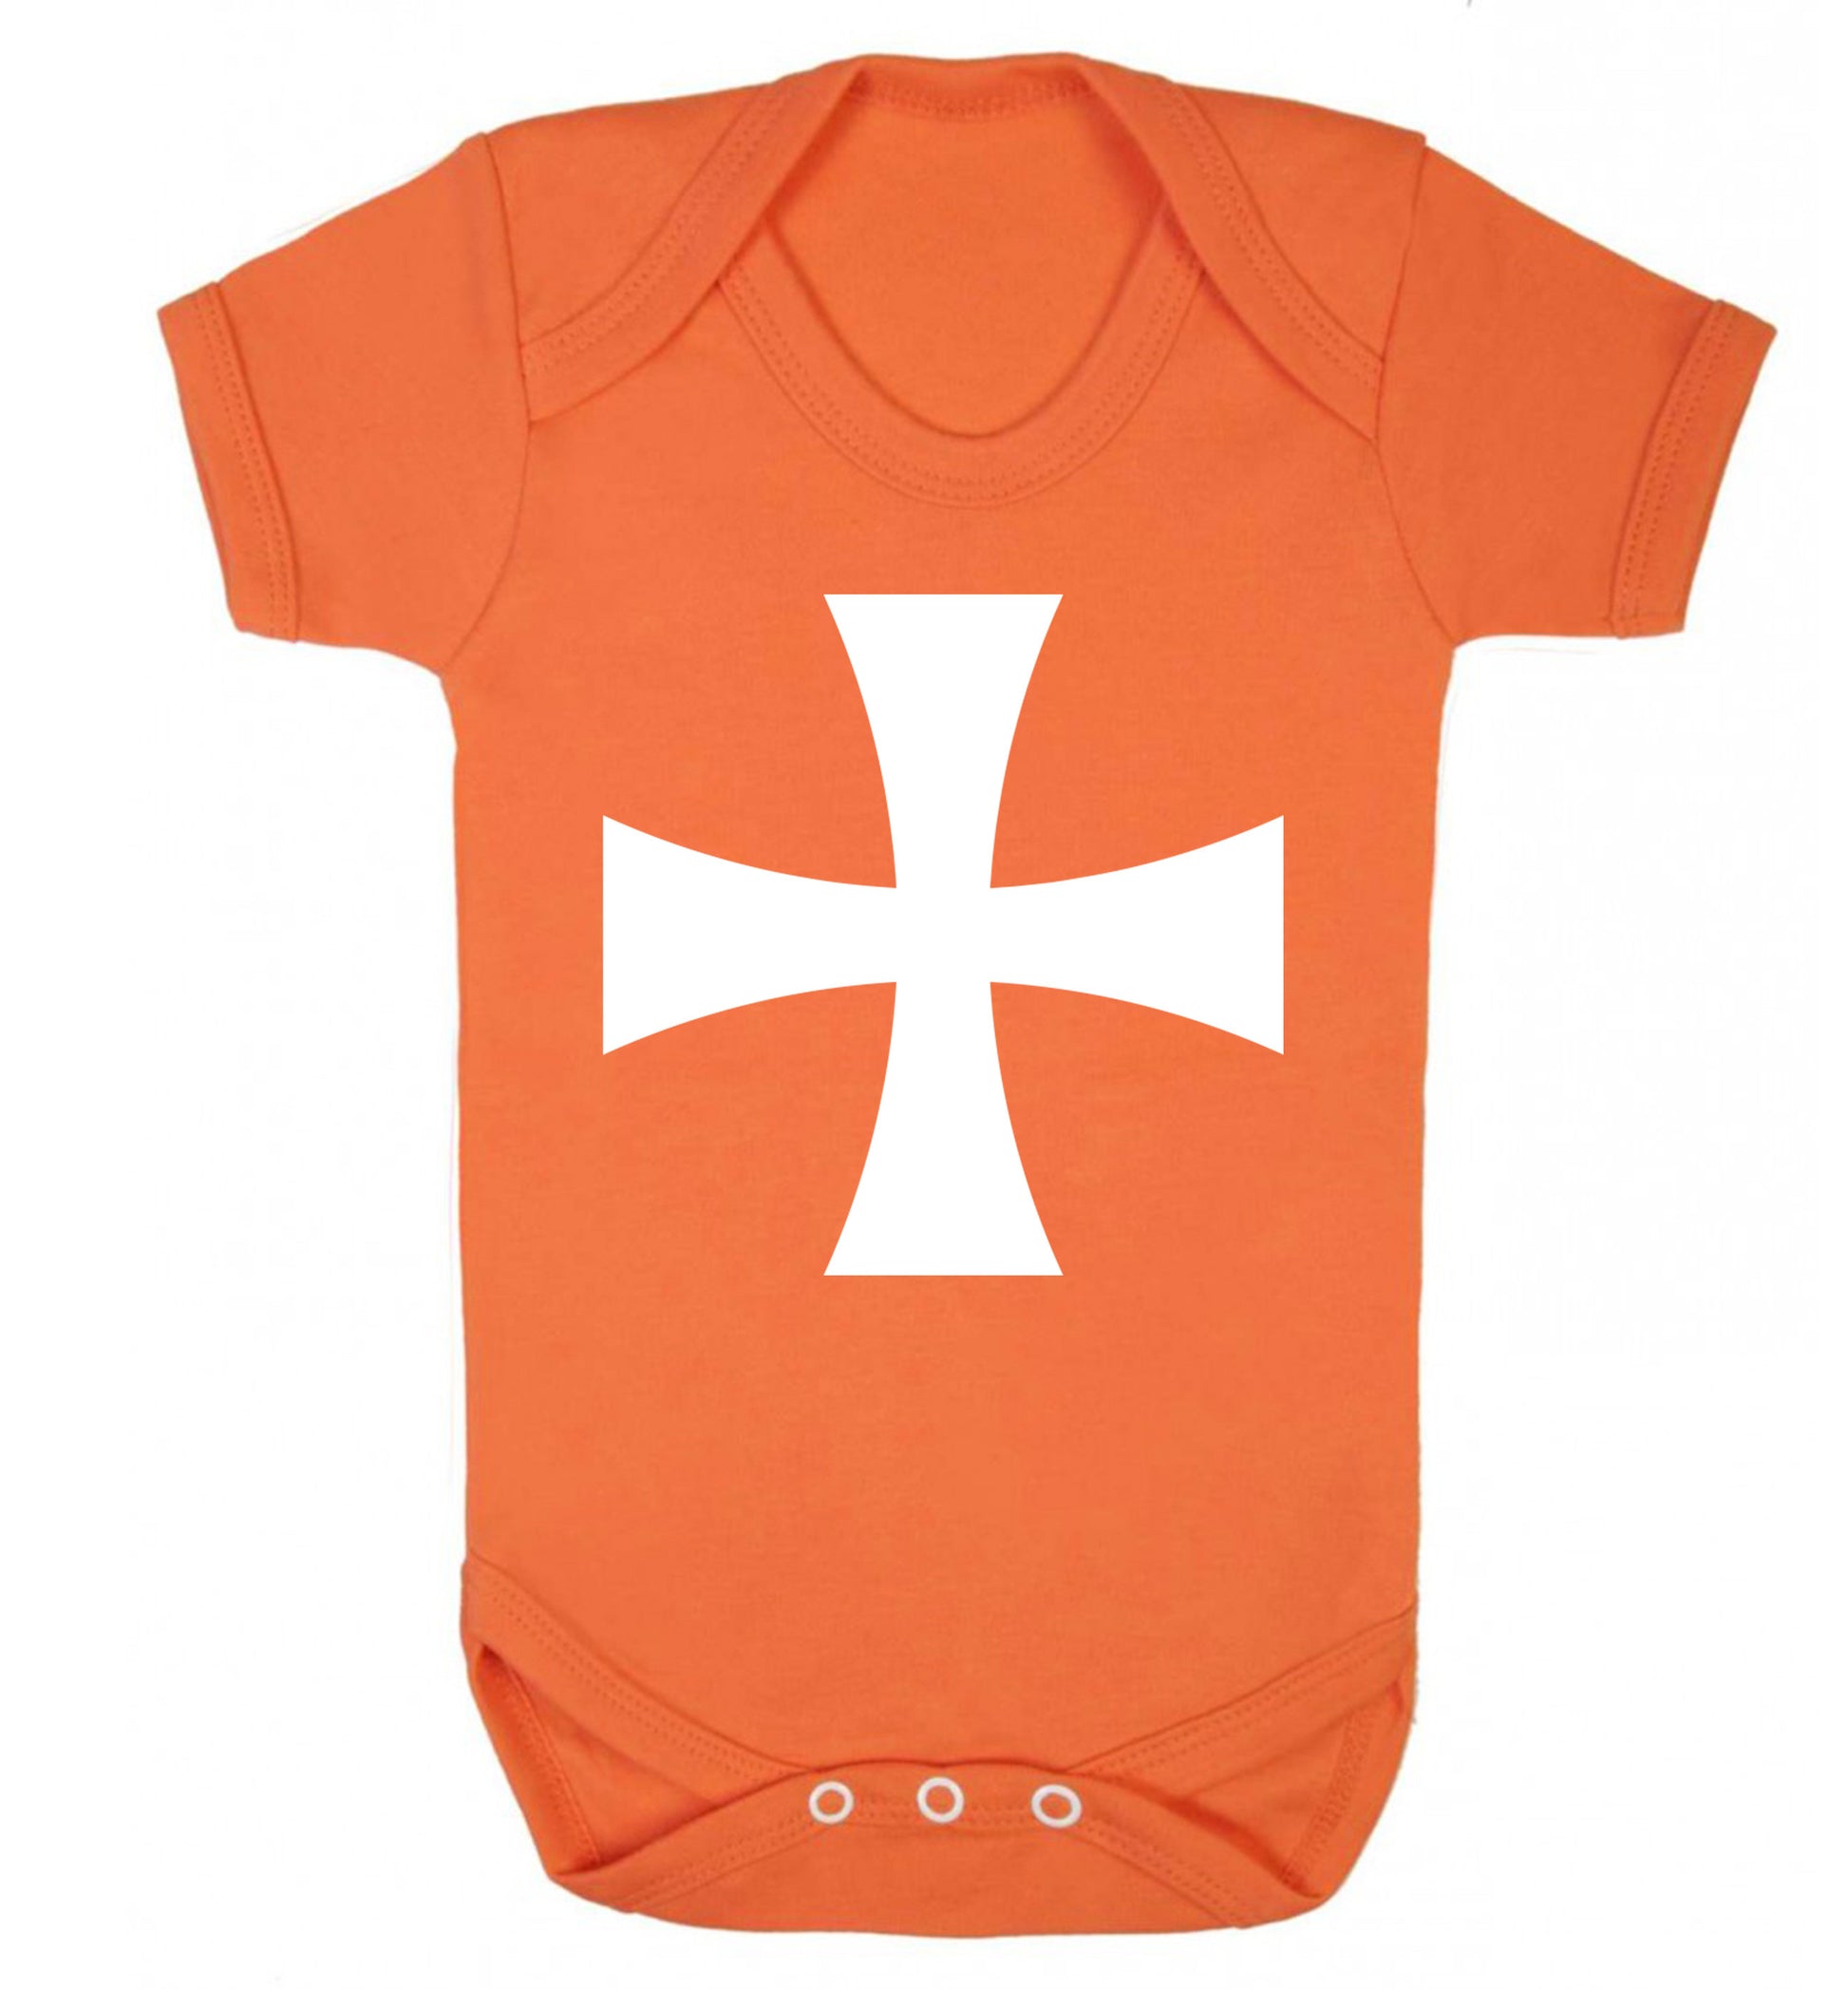 Knights Templar cross Baby Vest orange 18-24 months